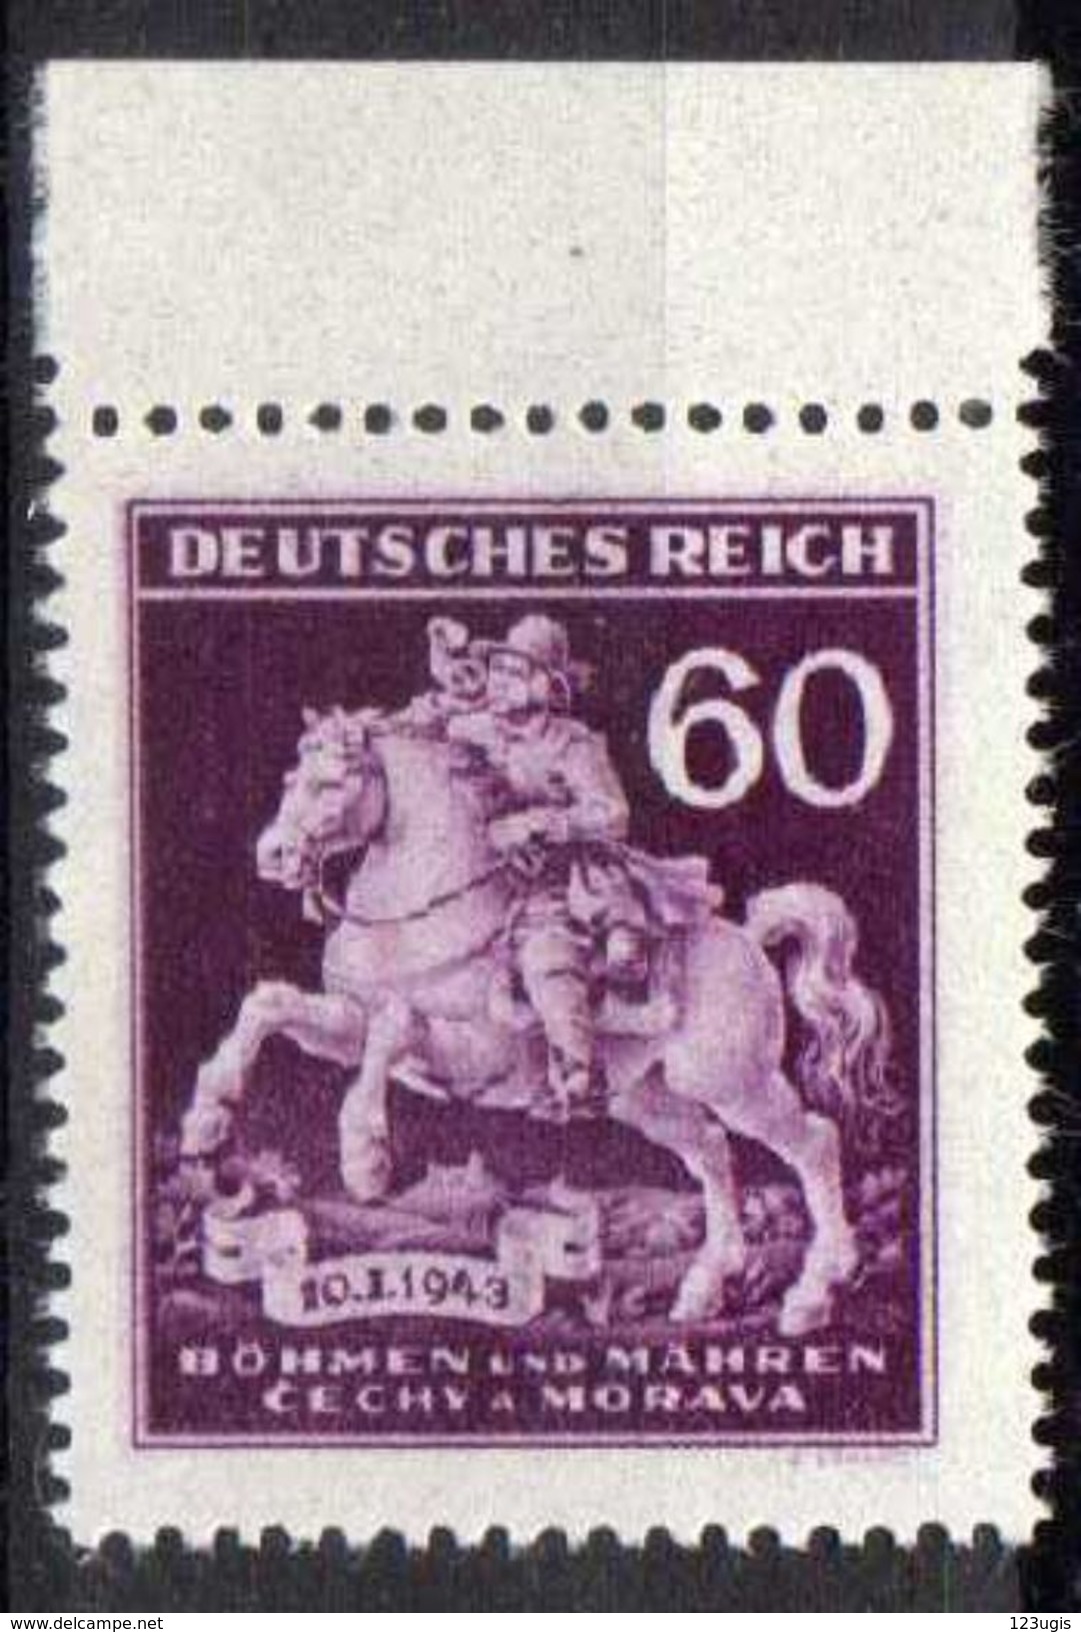 Böhmen Und Mähren 1943 Mi 113 ** [241213III] @ - Unused Stamps